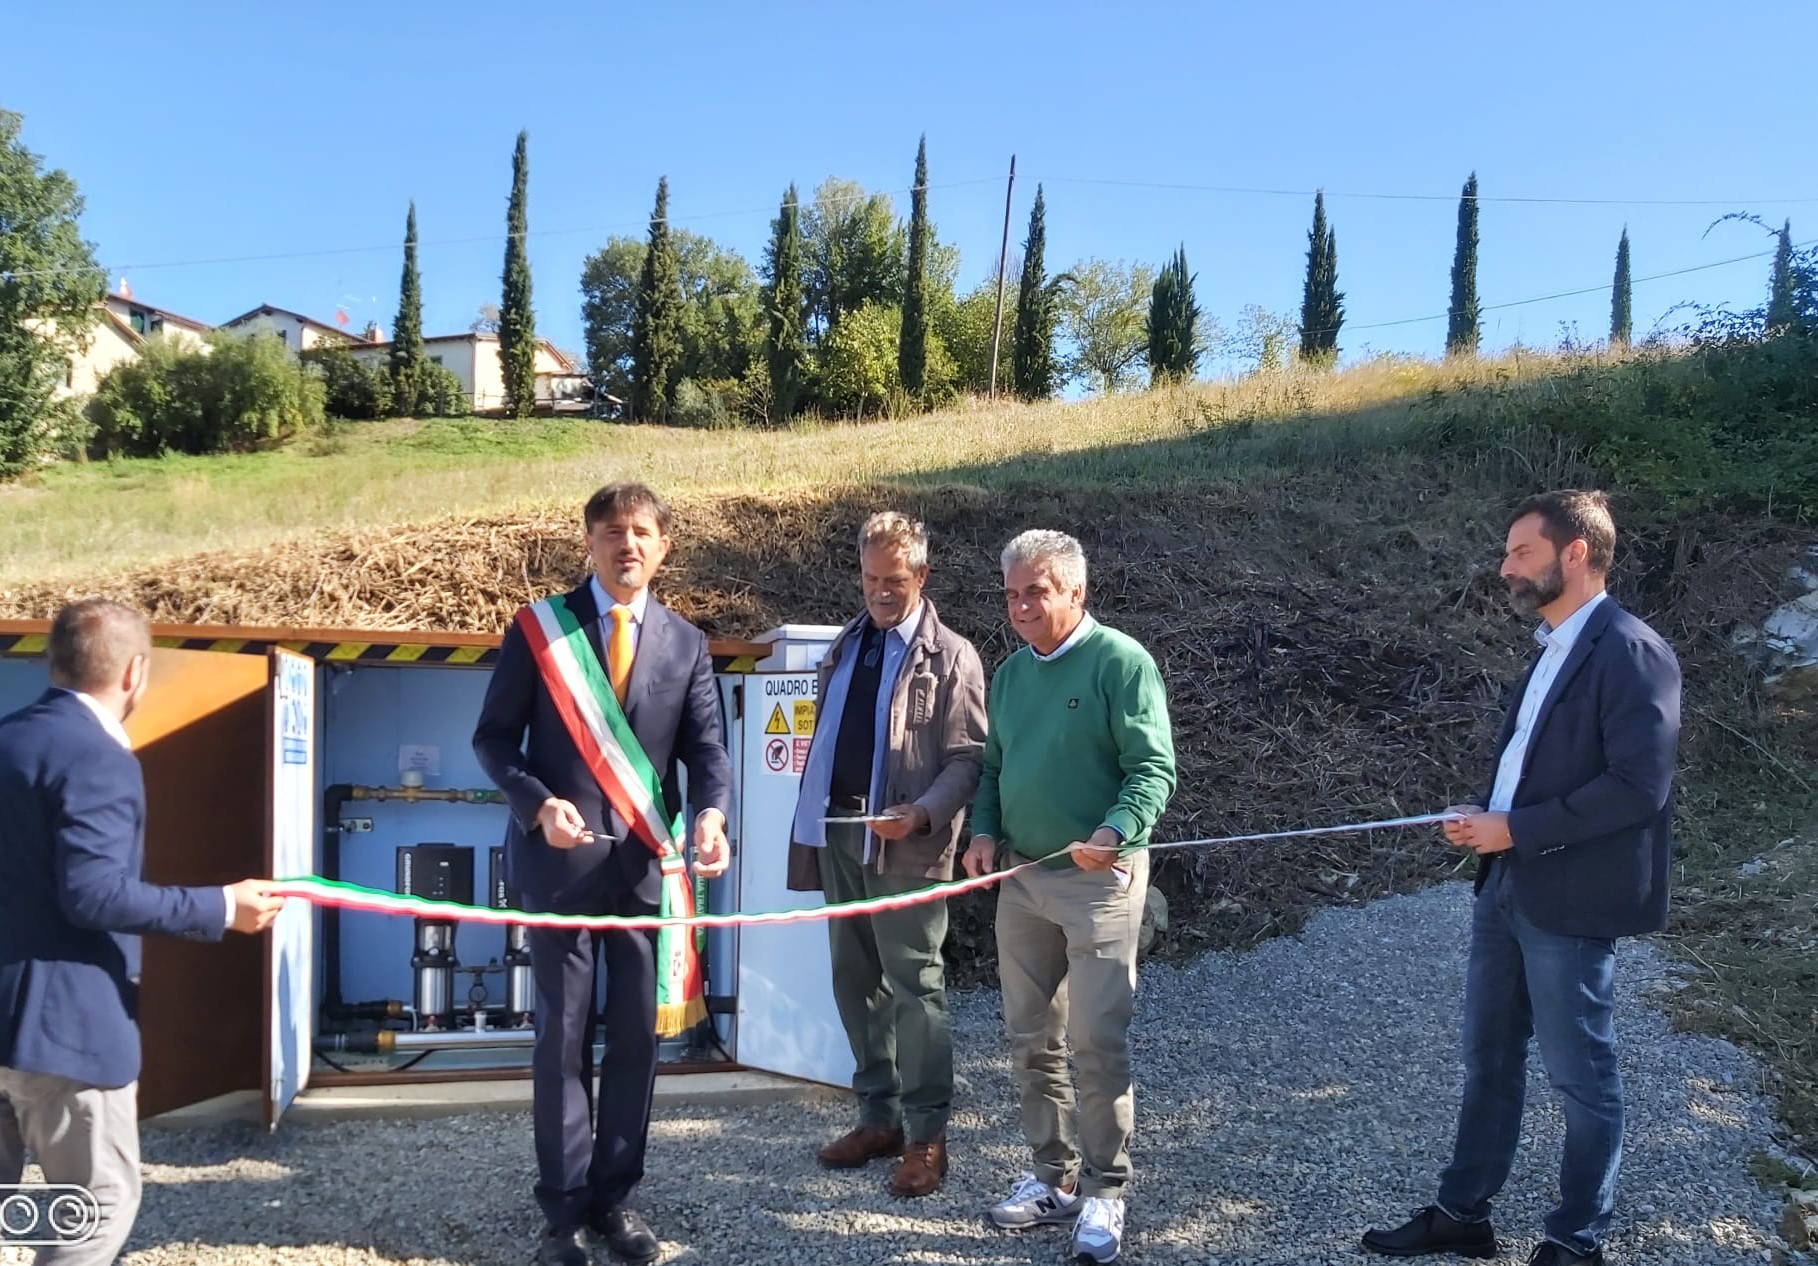 Taglio del nastro per il nuovo impianto idrico di San Donato a Pratovecchio Stia